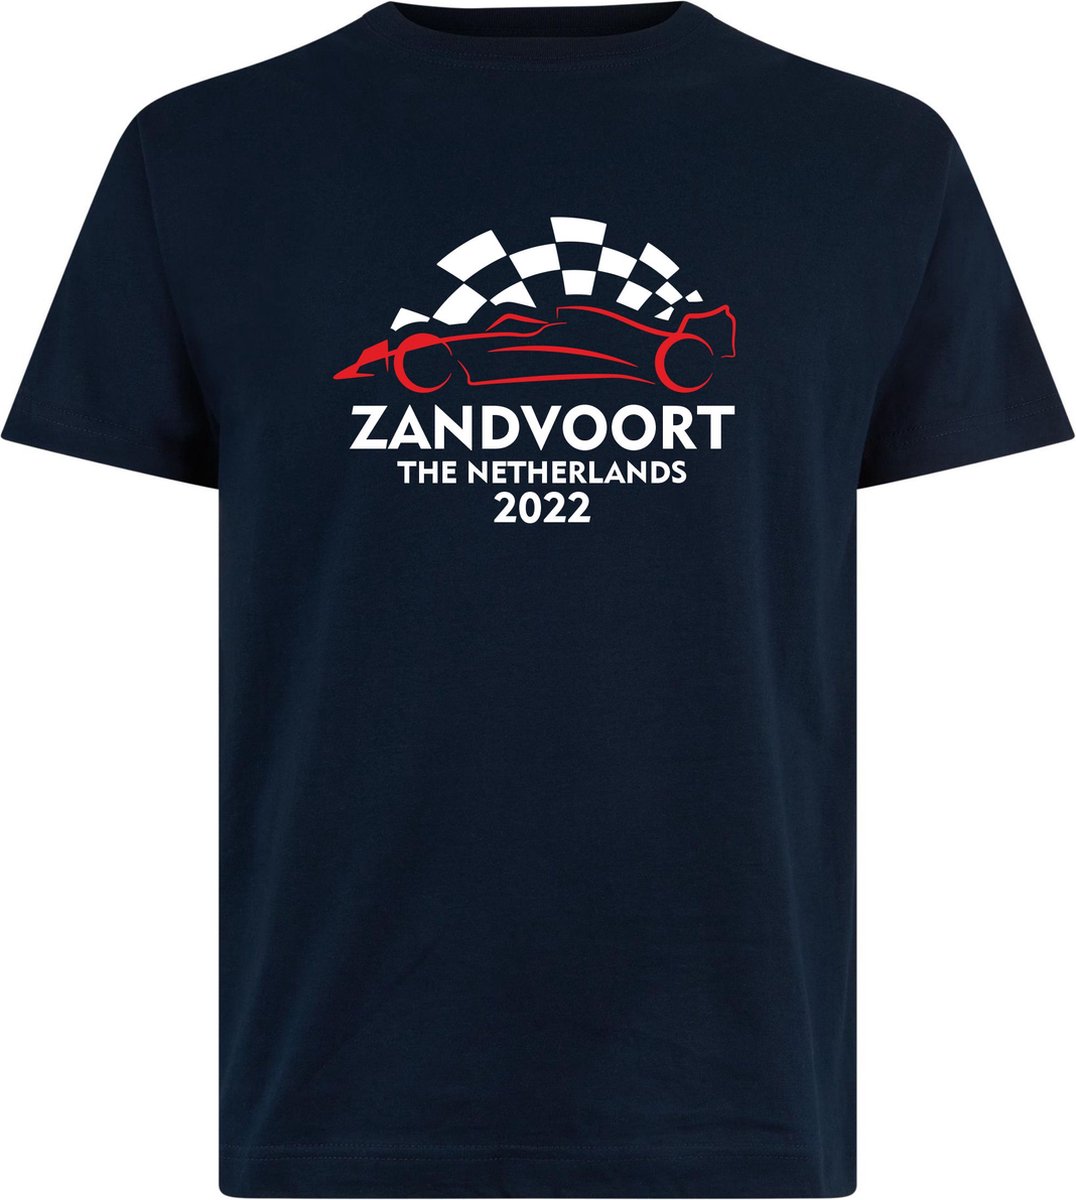 T-shirt Zandvoort 2022 met raceauto | Max Verstappen / Red Bull Racing / Formule 1 fan | Grand Prix Circuit Zandvoort | kleding shirt | Navy | maat S